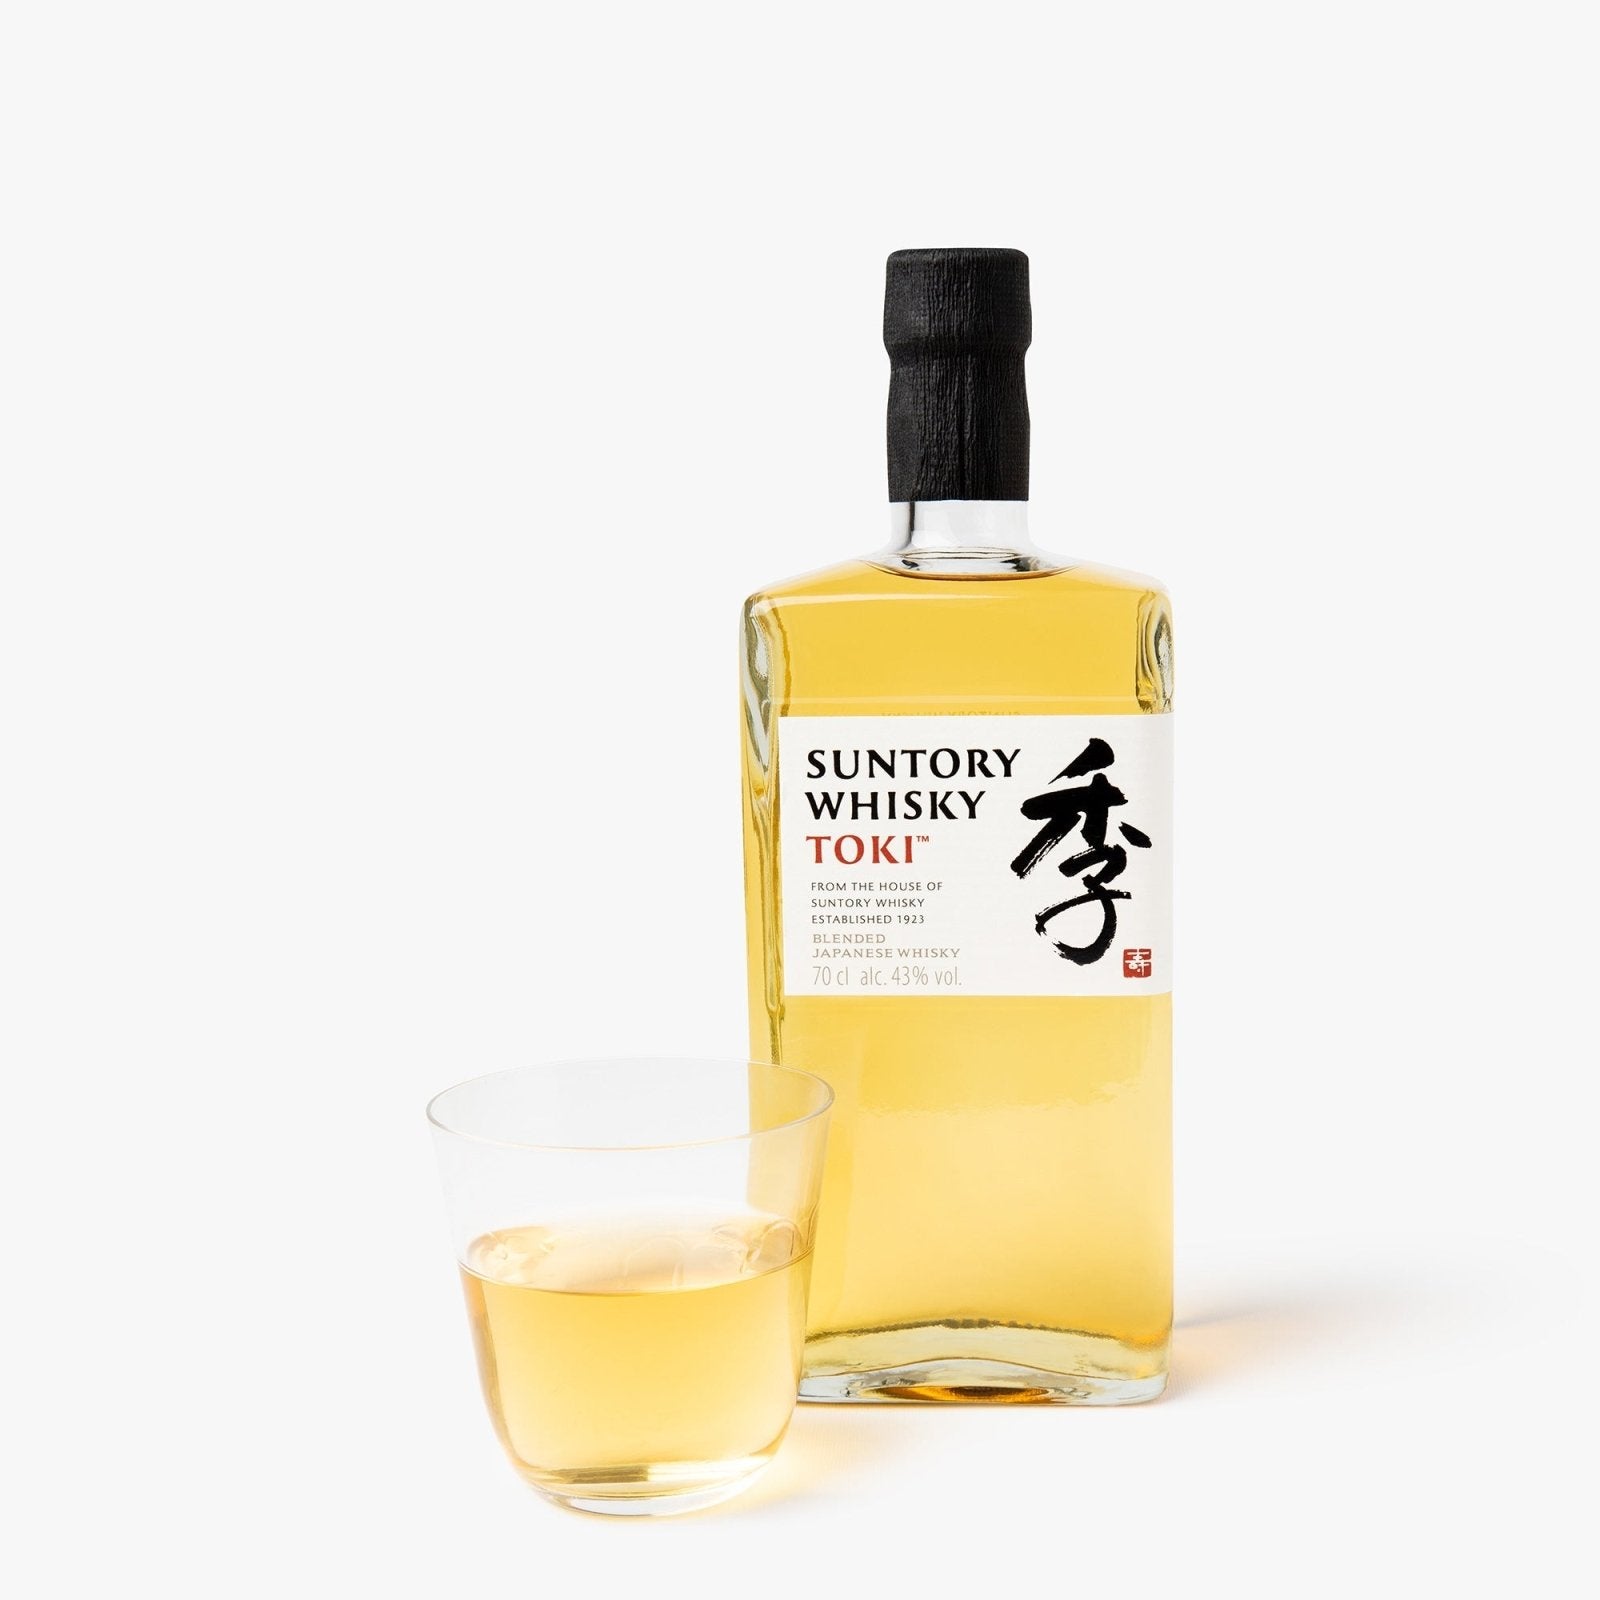 Alcools, Sakés et Spiritueux Japonais Page 2 - iRASSHAi